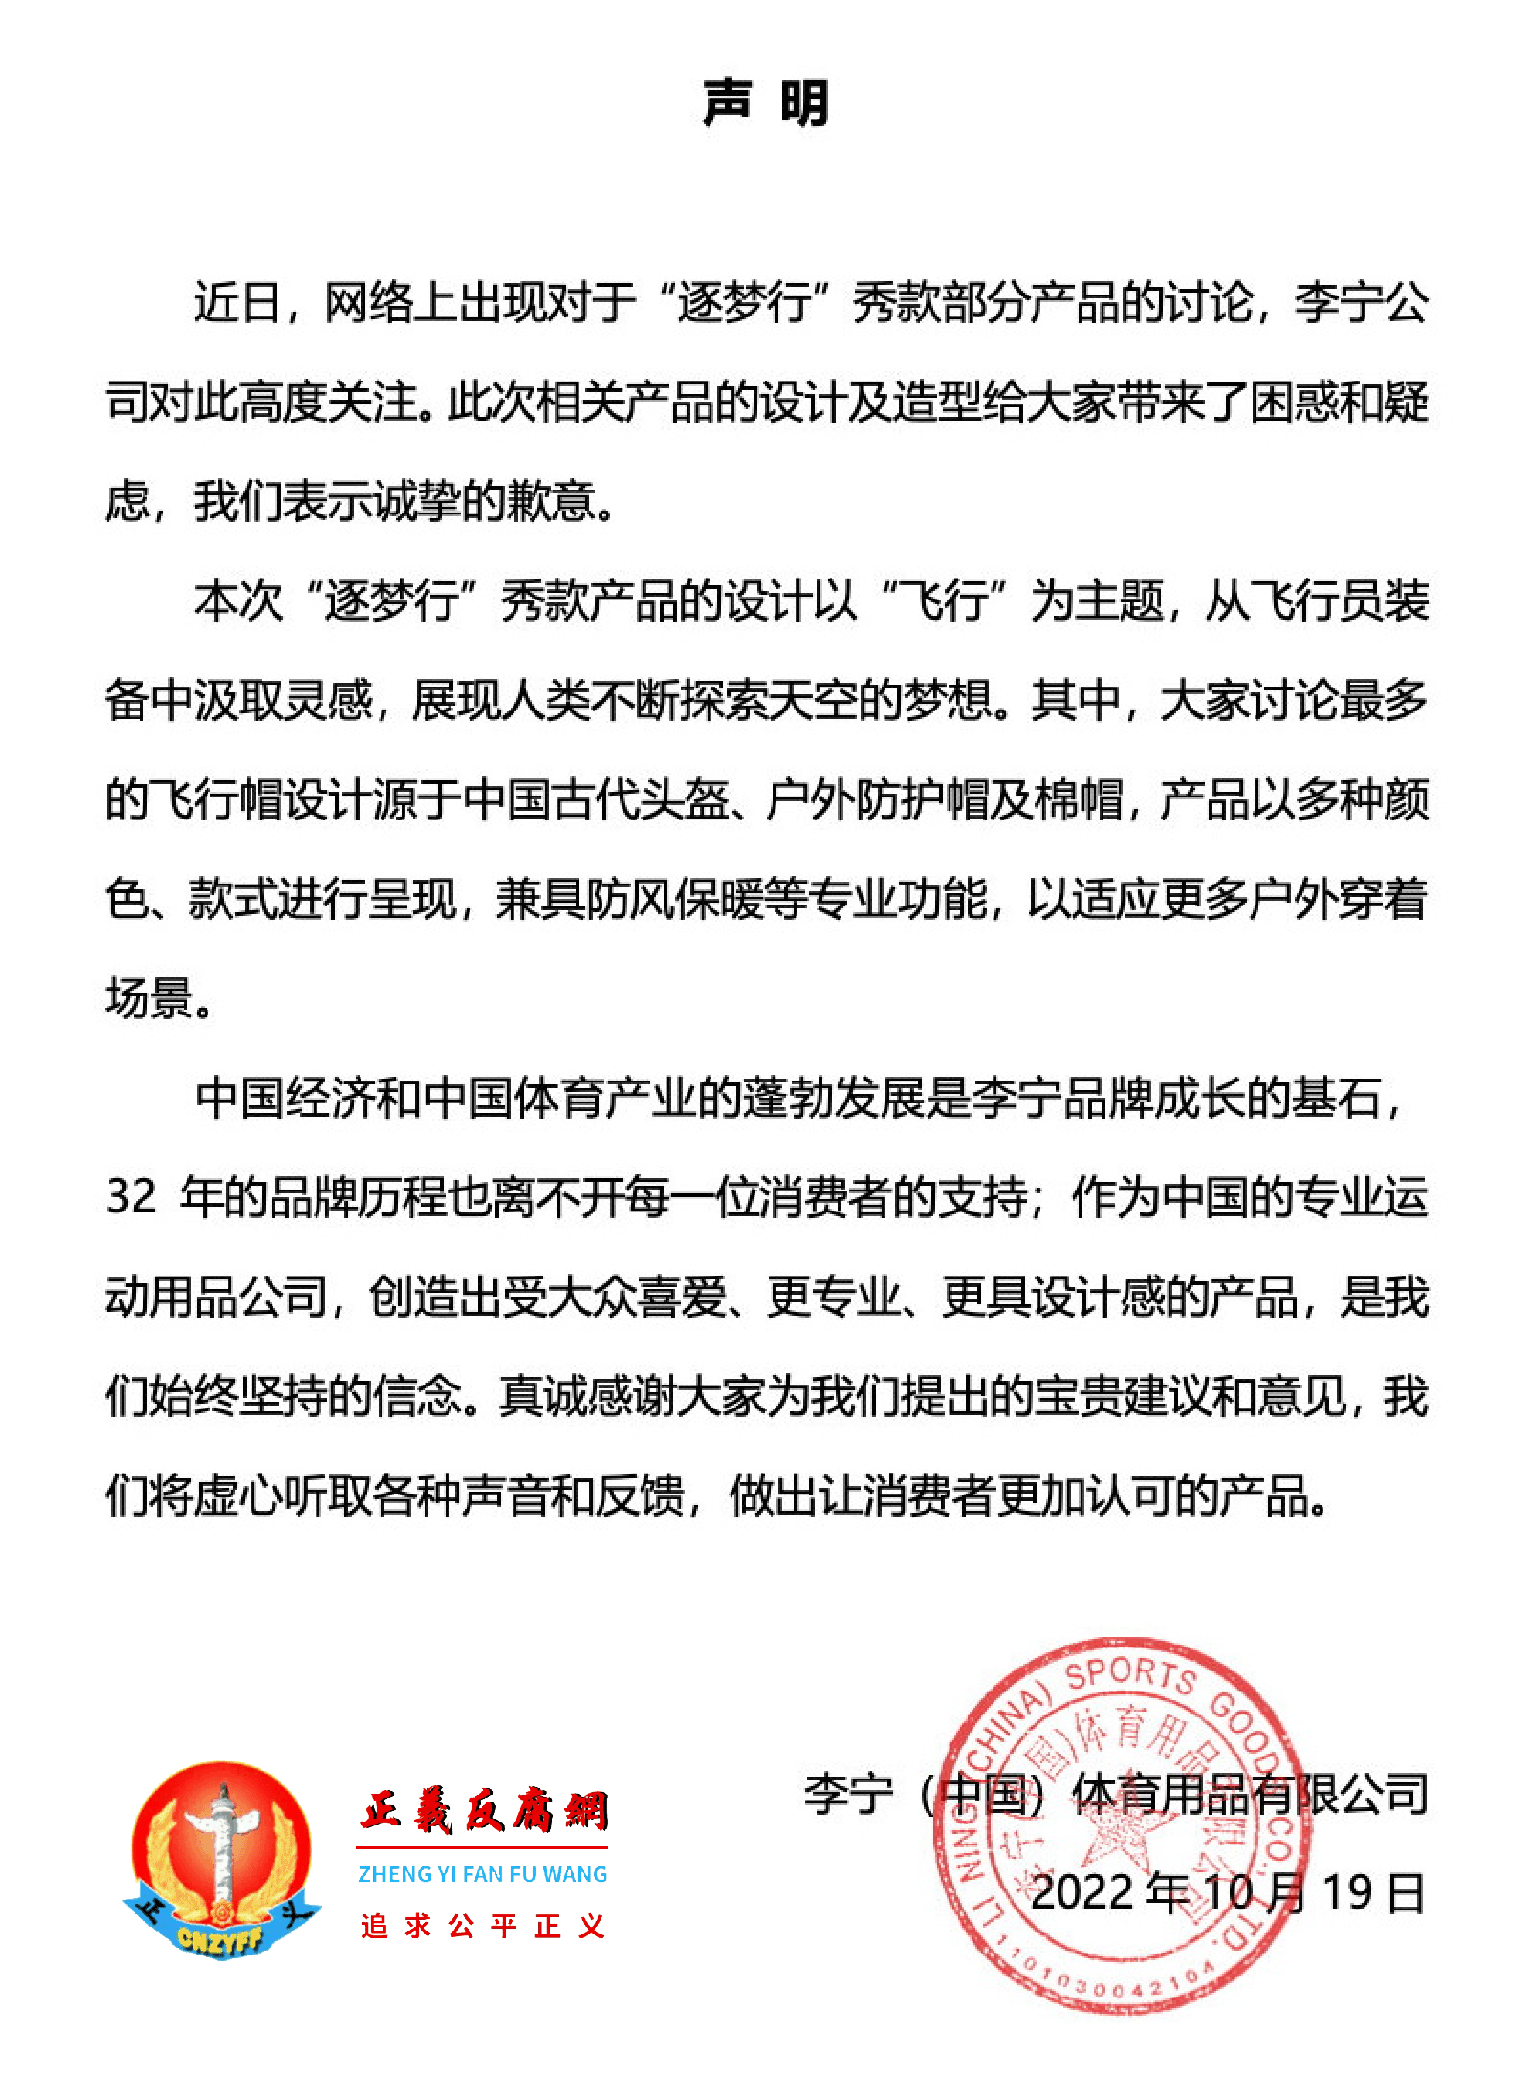 微博认证为李宁官方微博在微博上发表声明道歉。.png